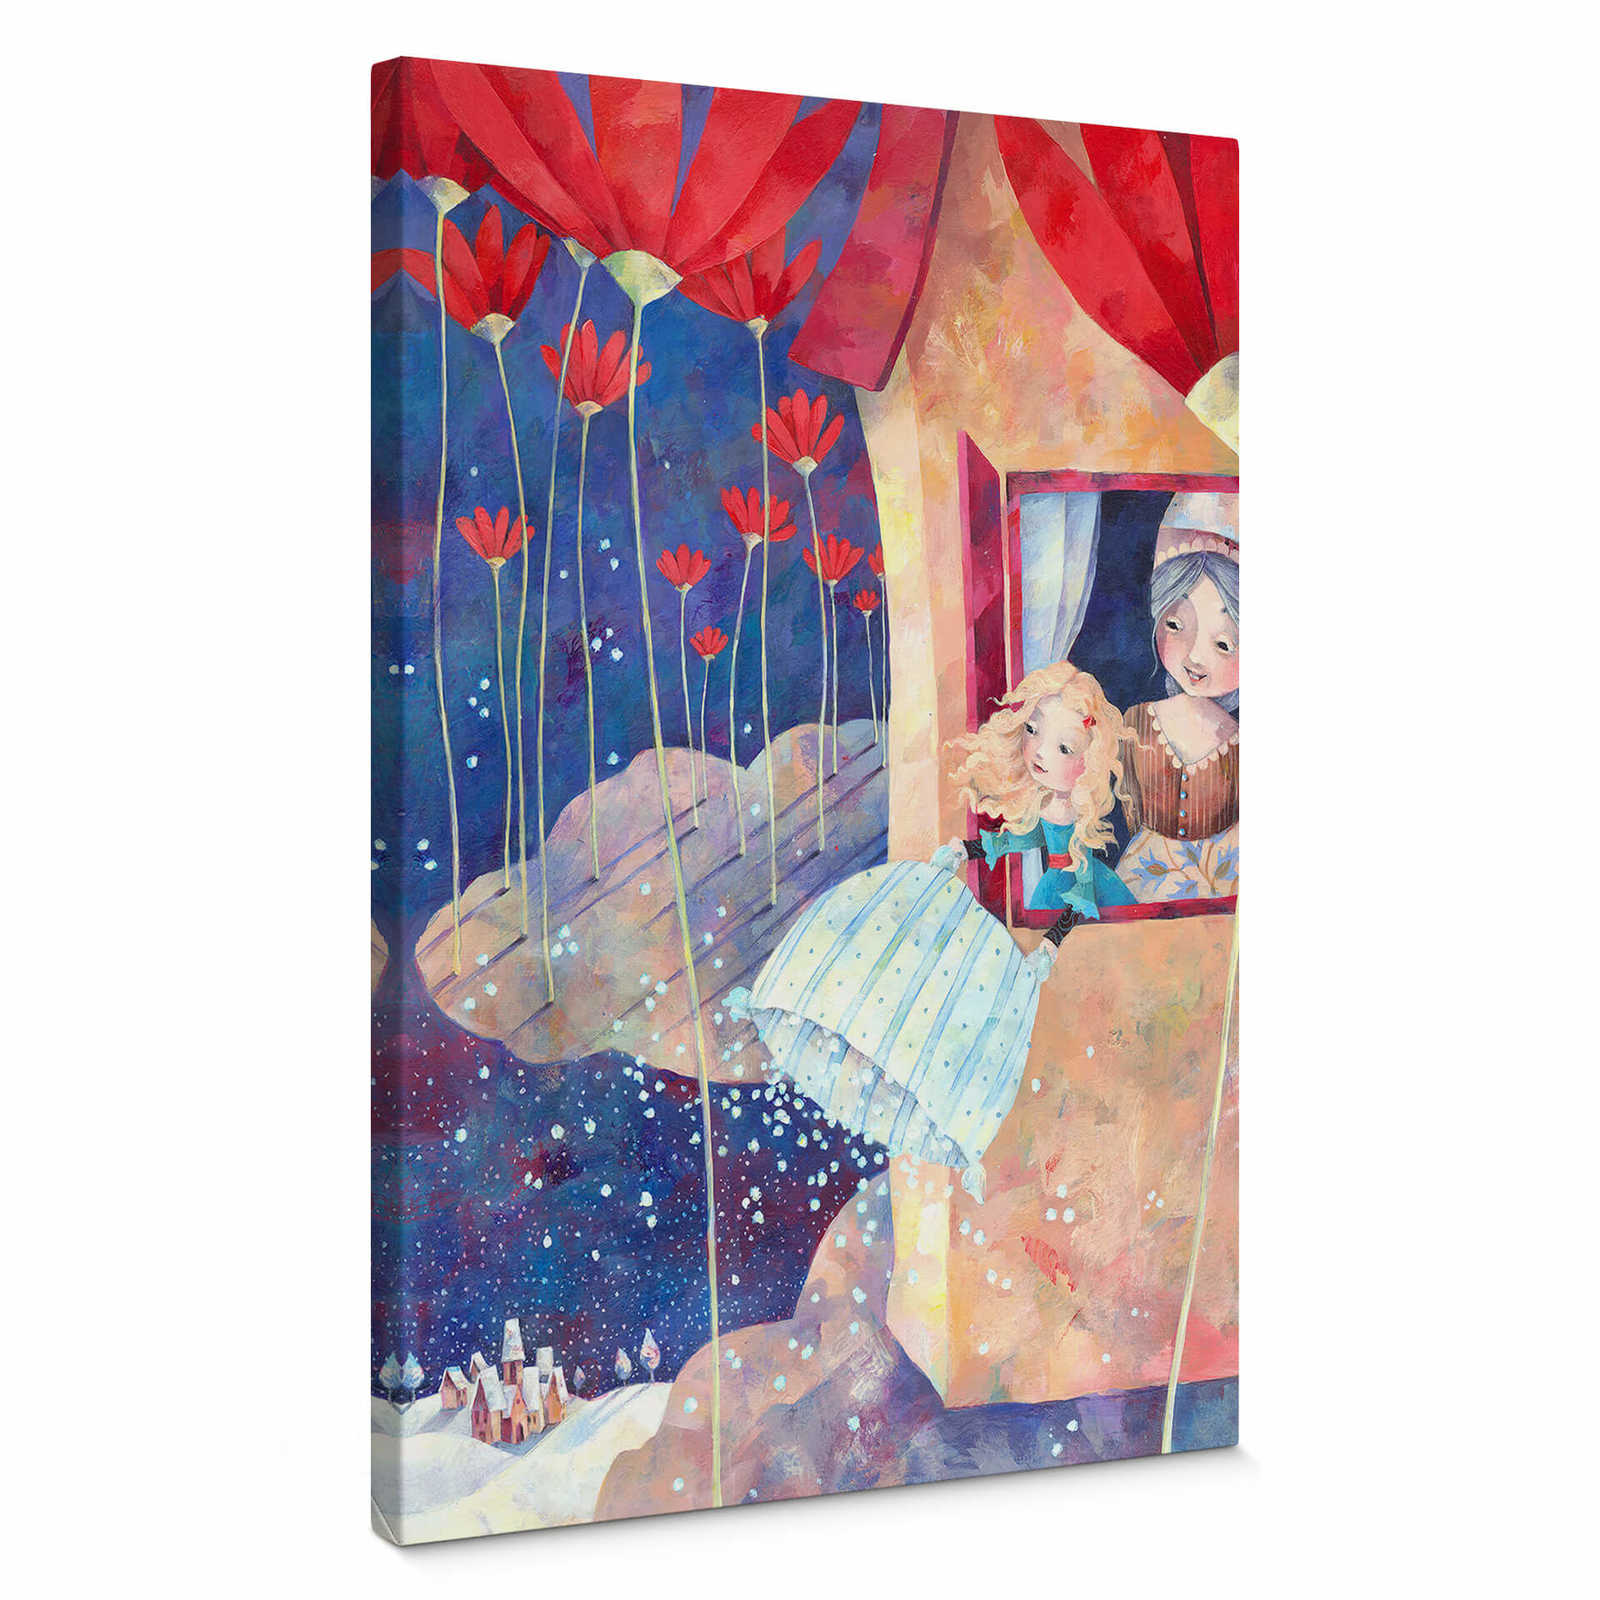 Cuadro en lienzo Fairytale Frau Holle, by Blanz - 0,50 m x 0,70 m
